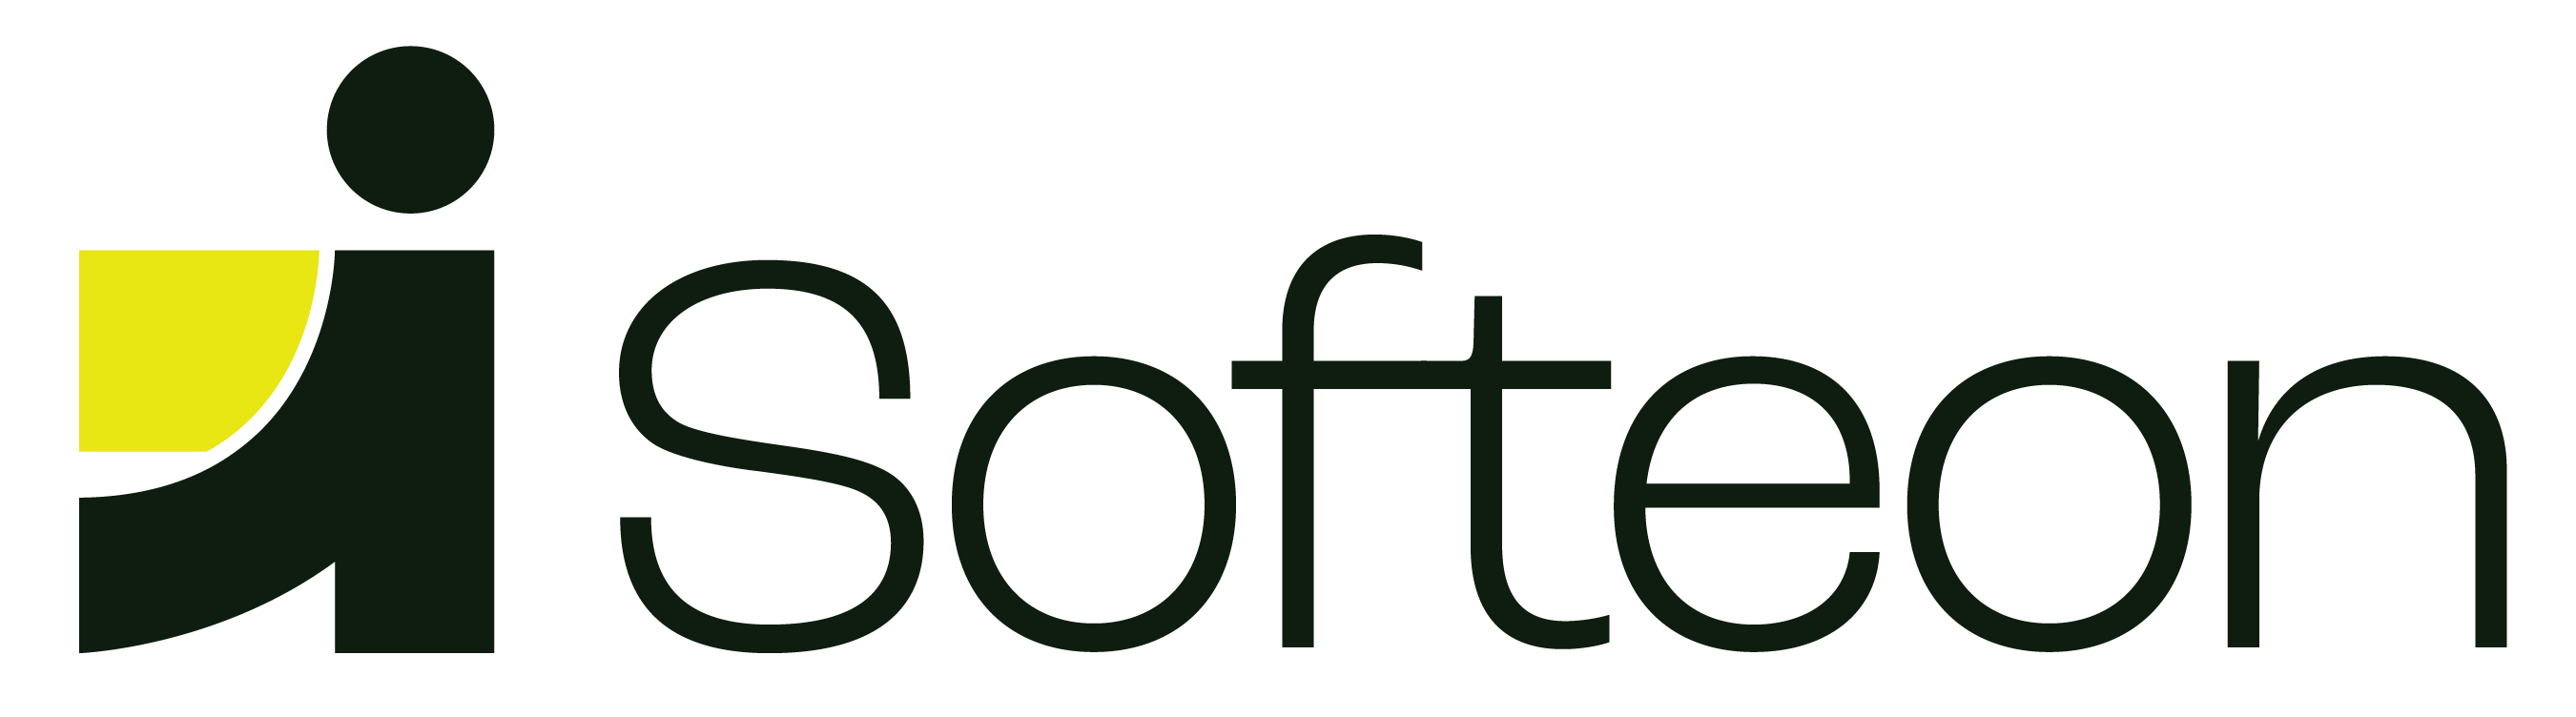 softeon logo